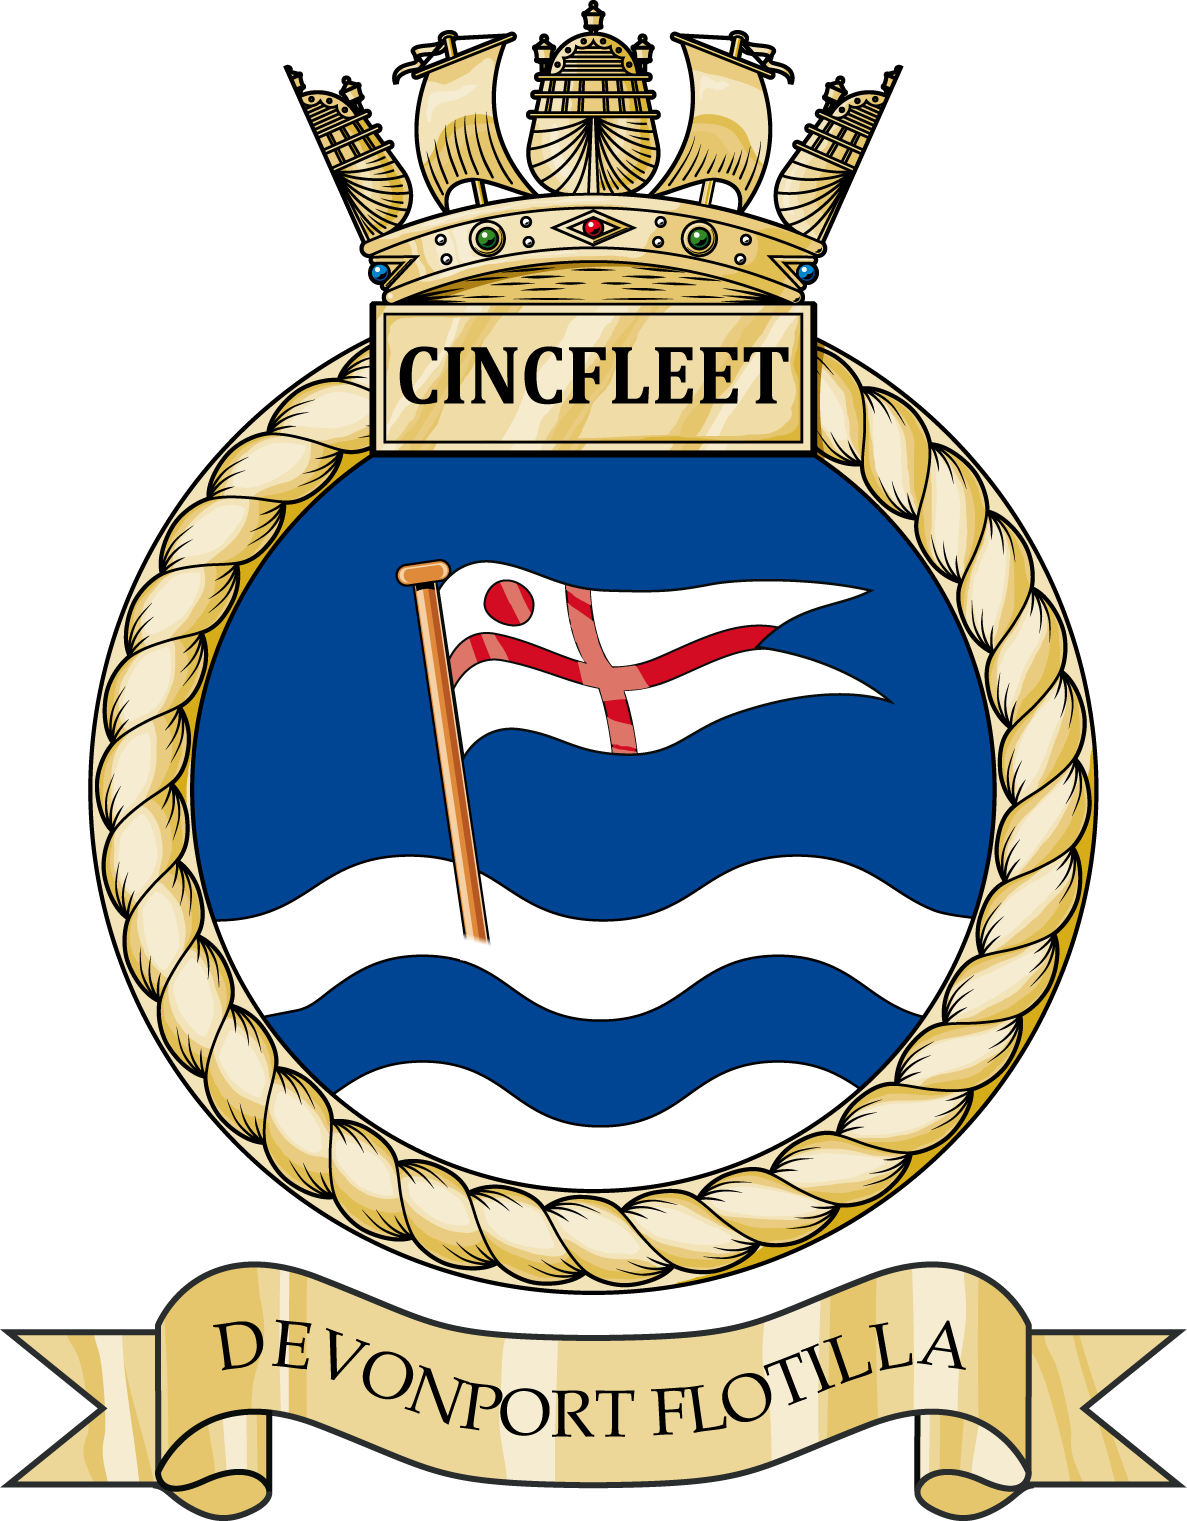 Commander Devonport Flotilla - Comdevflot